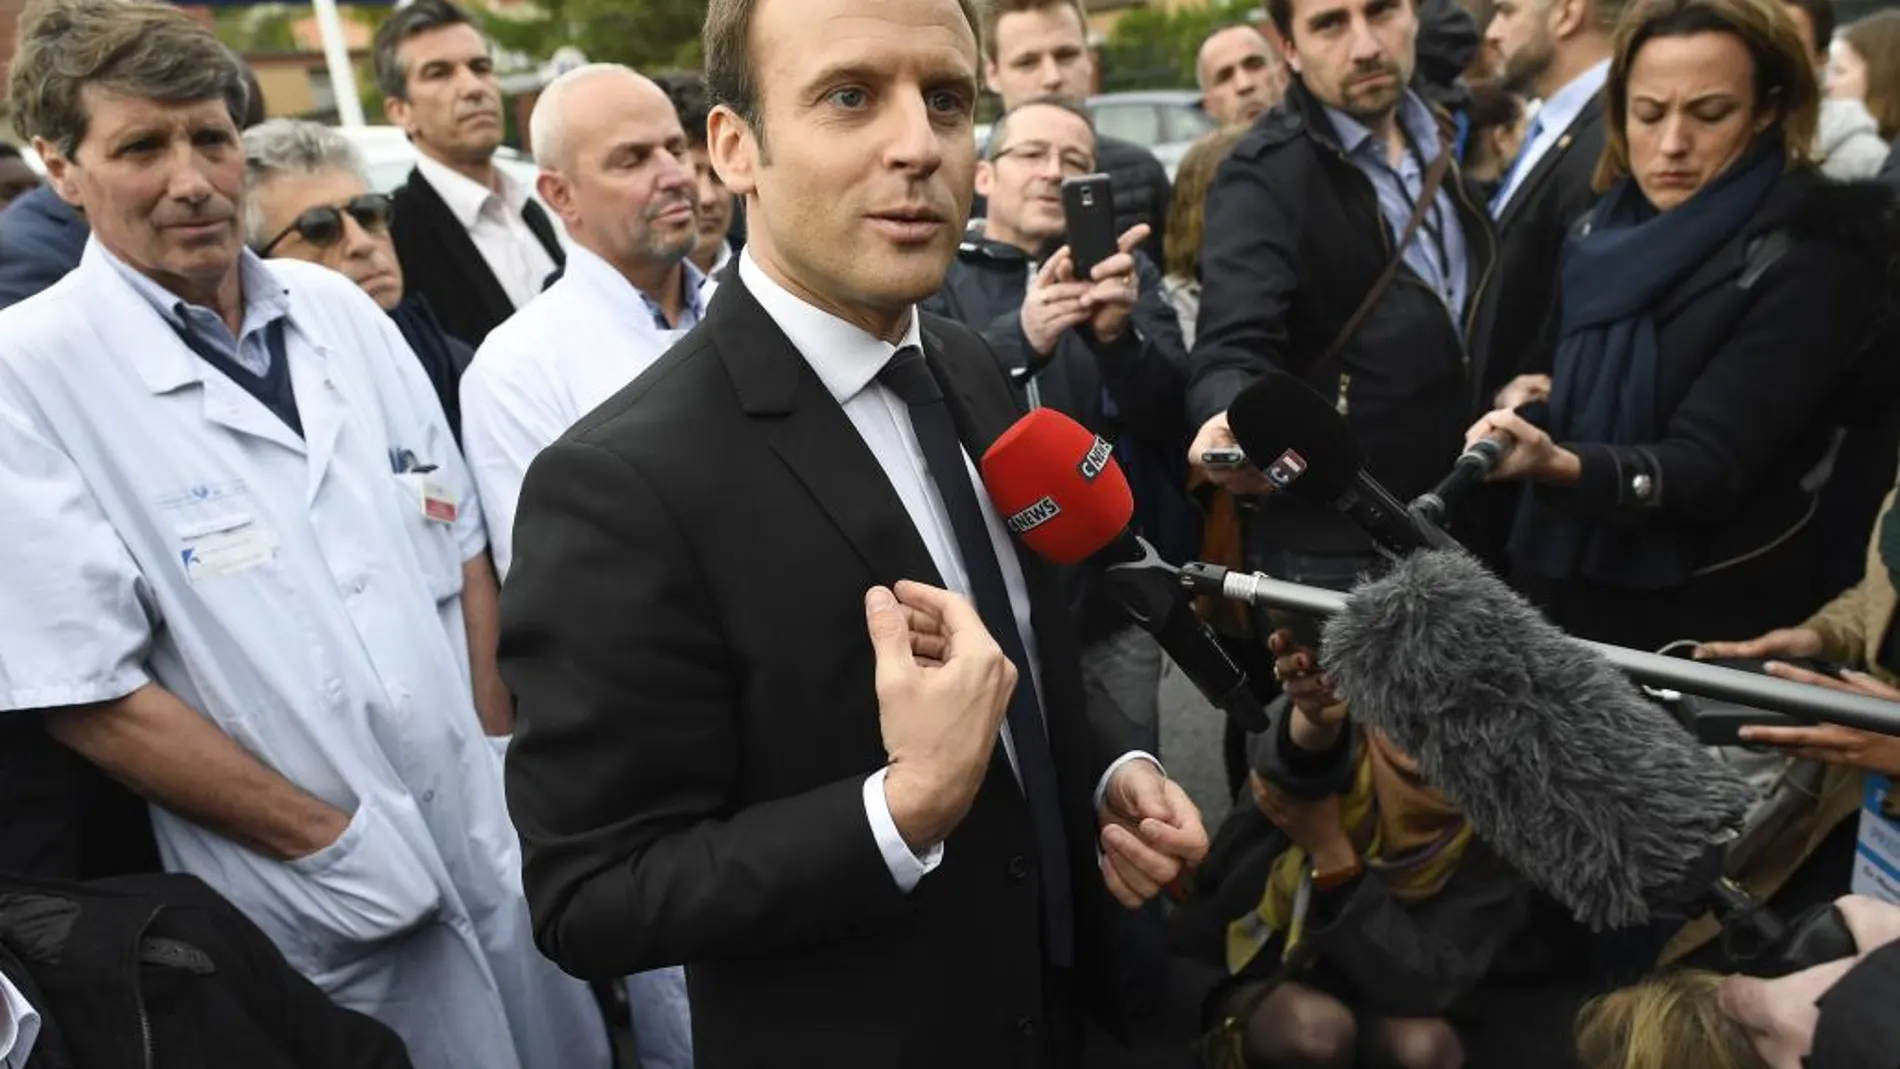 El candidato socioliberal a la presidencia francesa, Emmanuel Macron